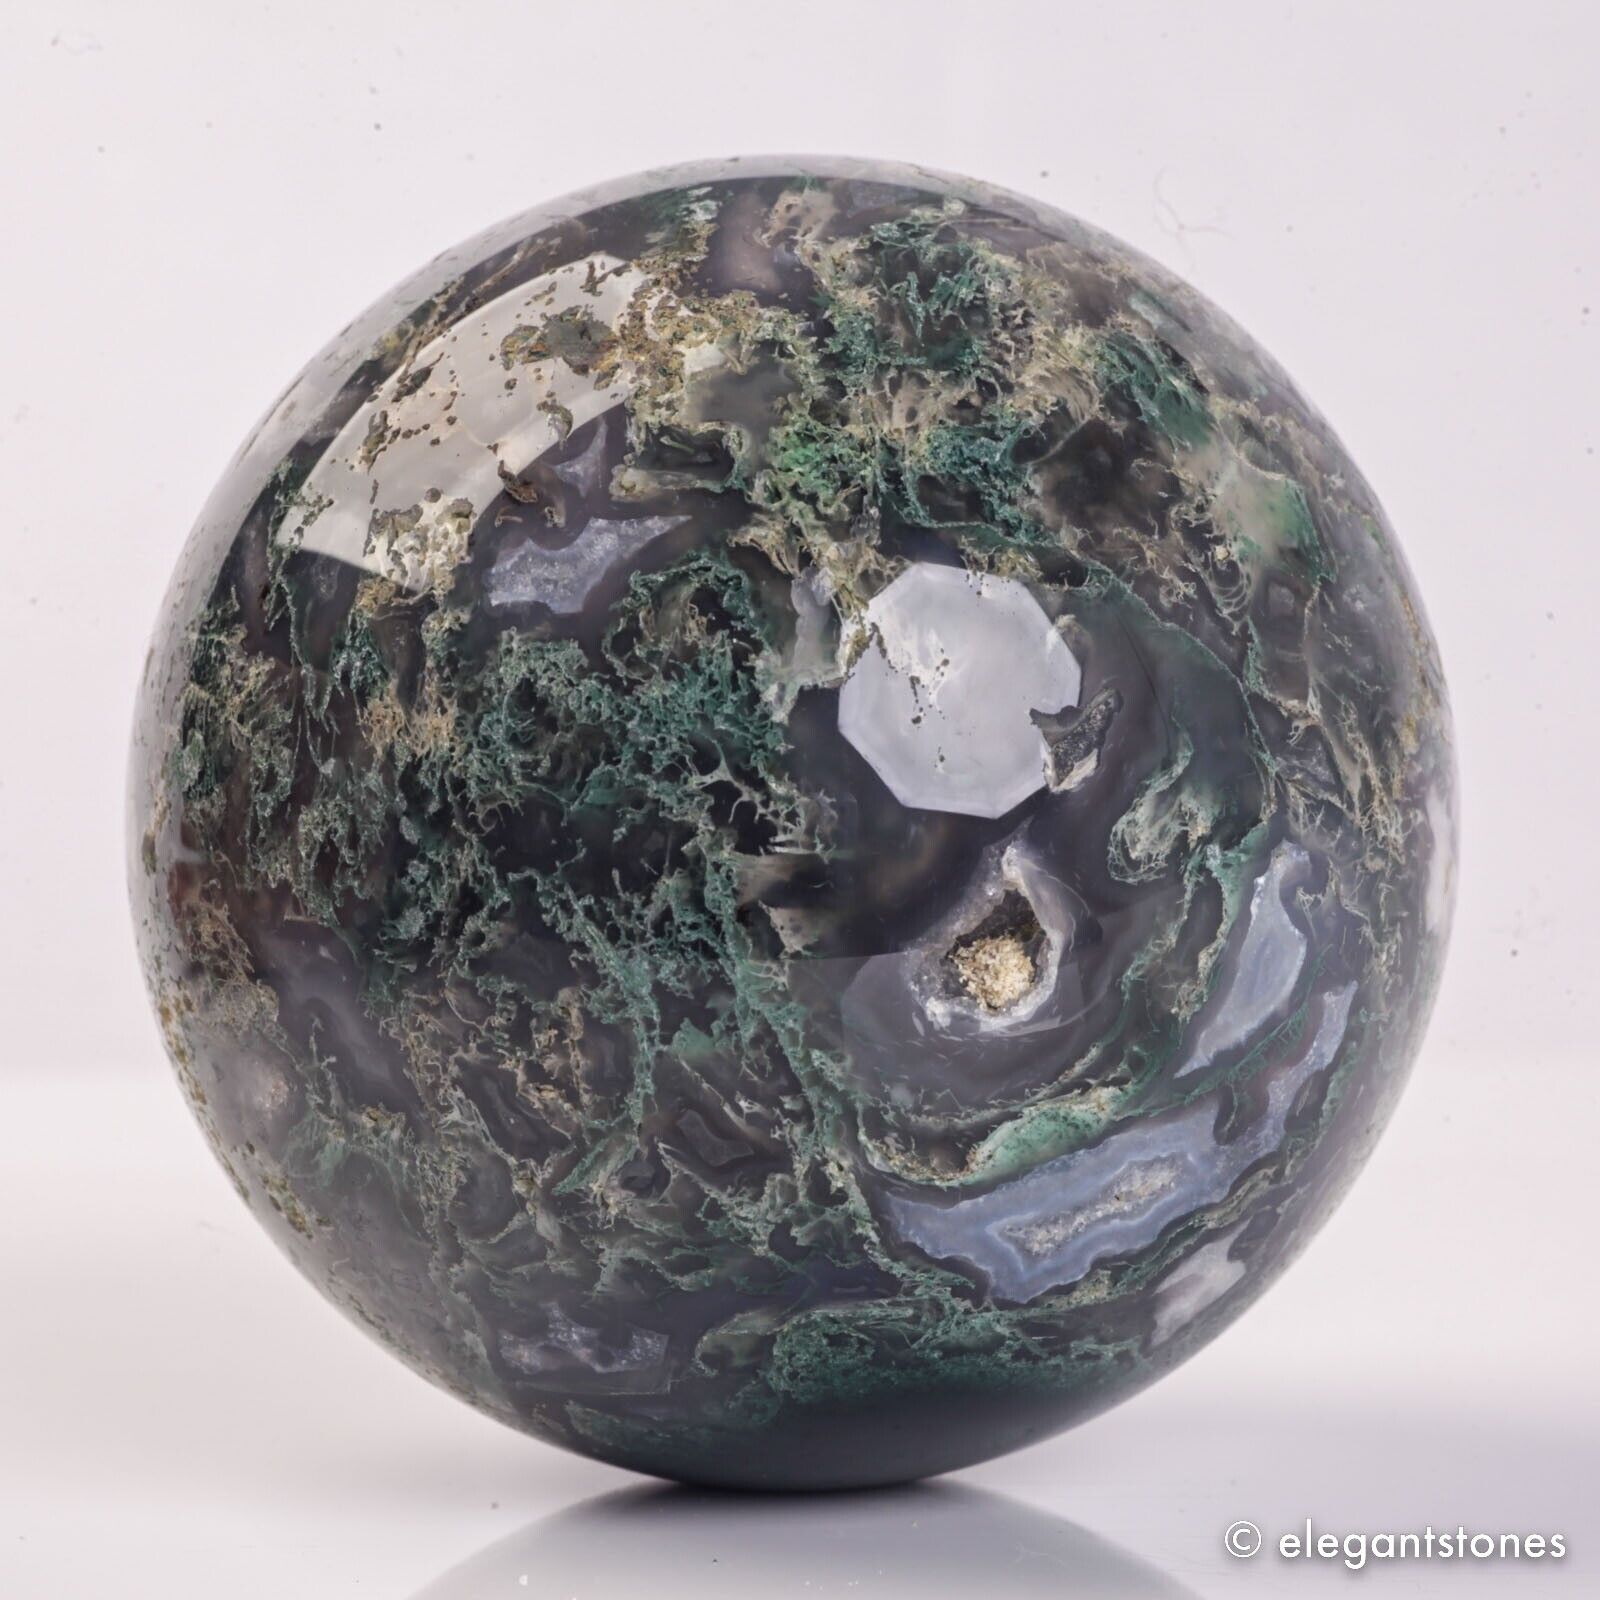 733g 82mm Natural Green Moss Agate Crystal Geode Sphere Quartz Healing Ball